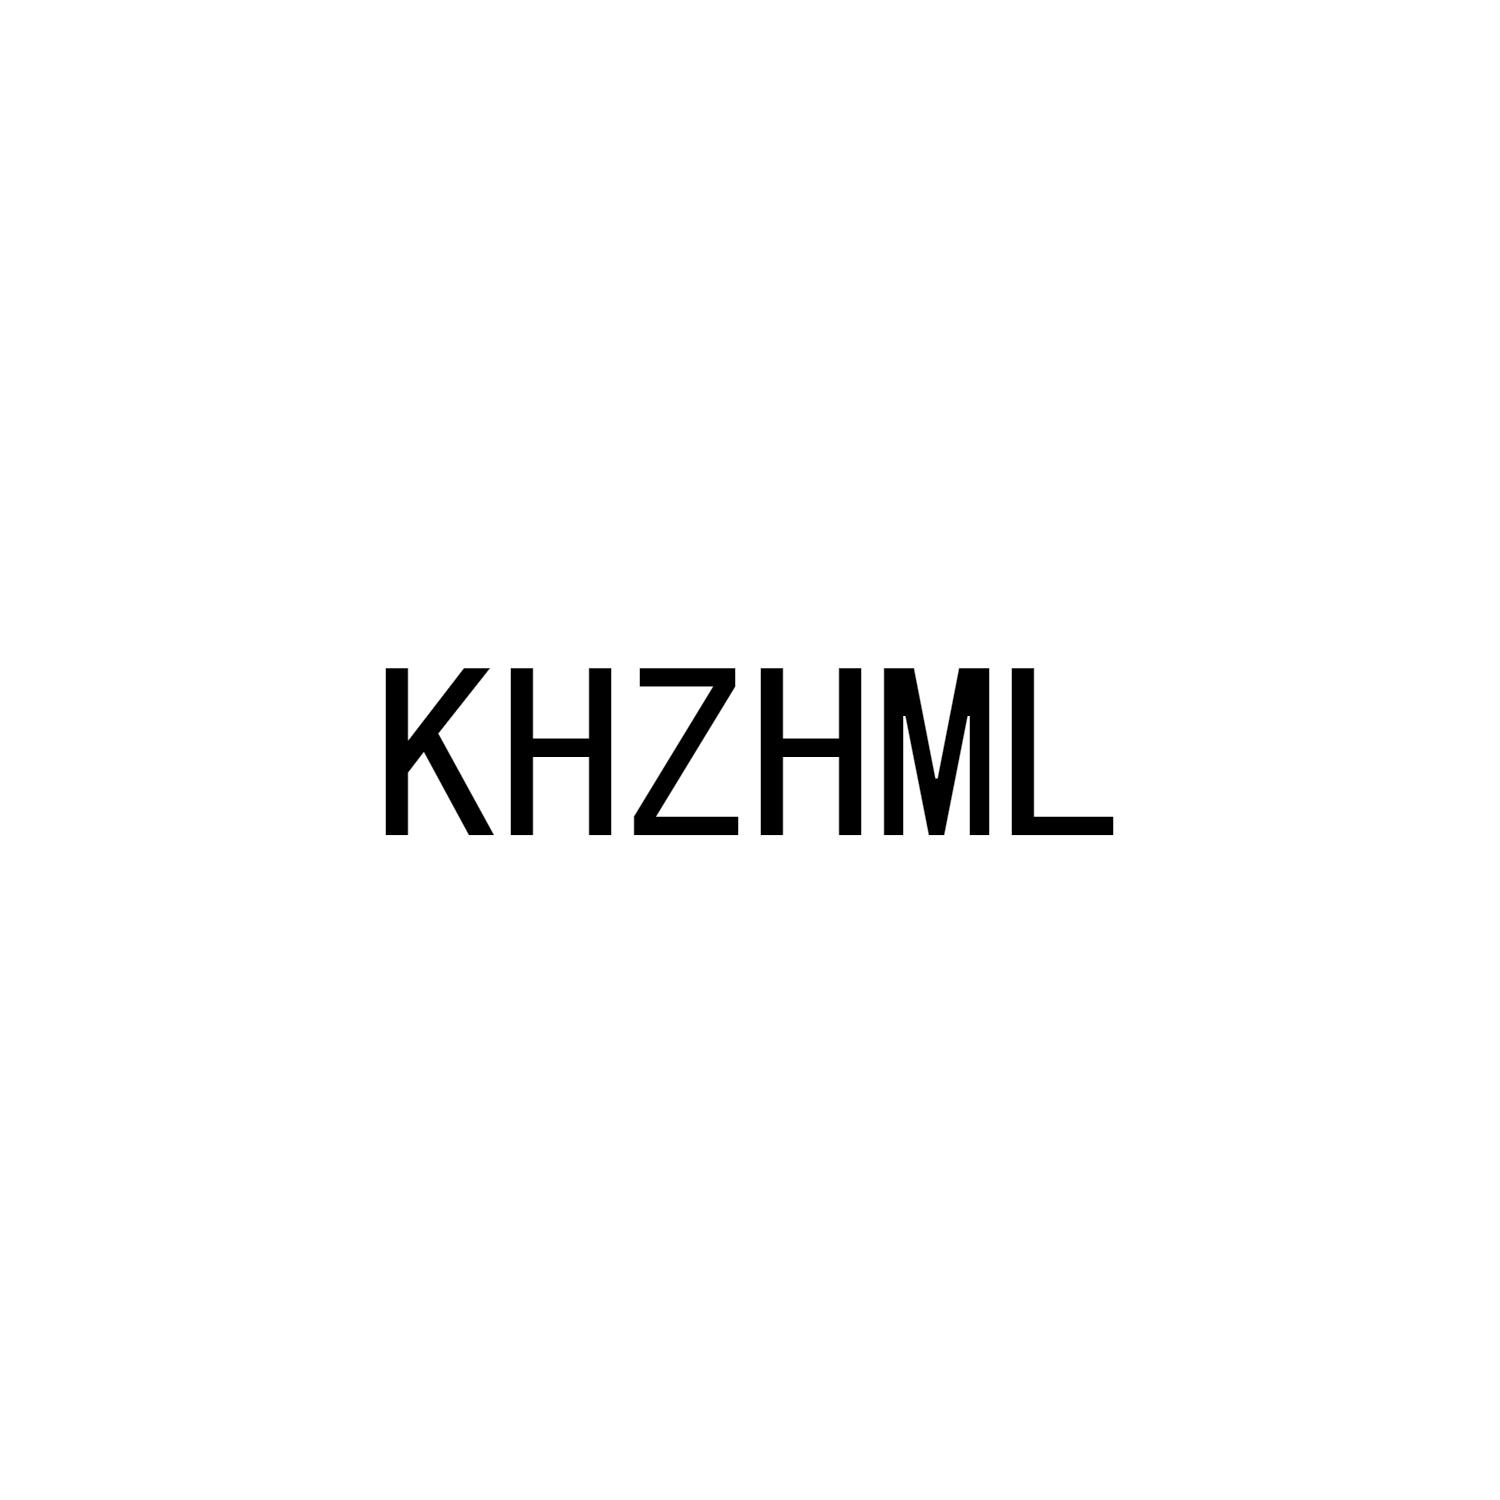 KHZHML